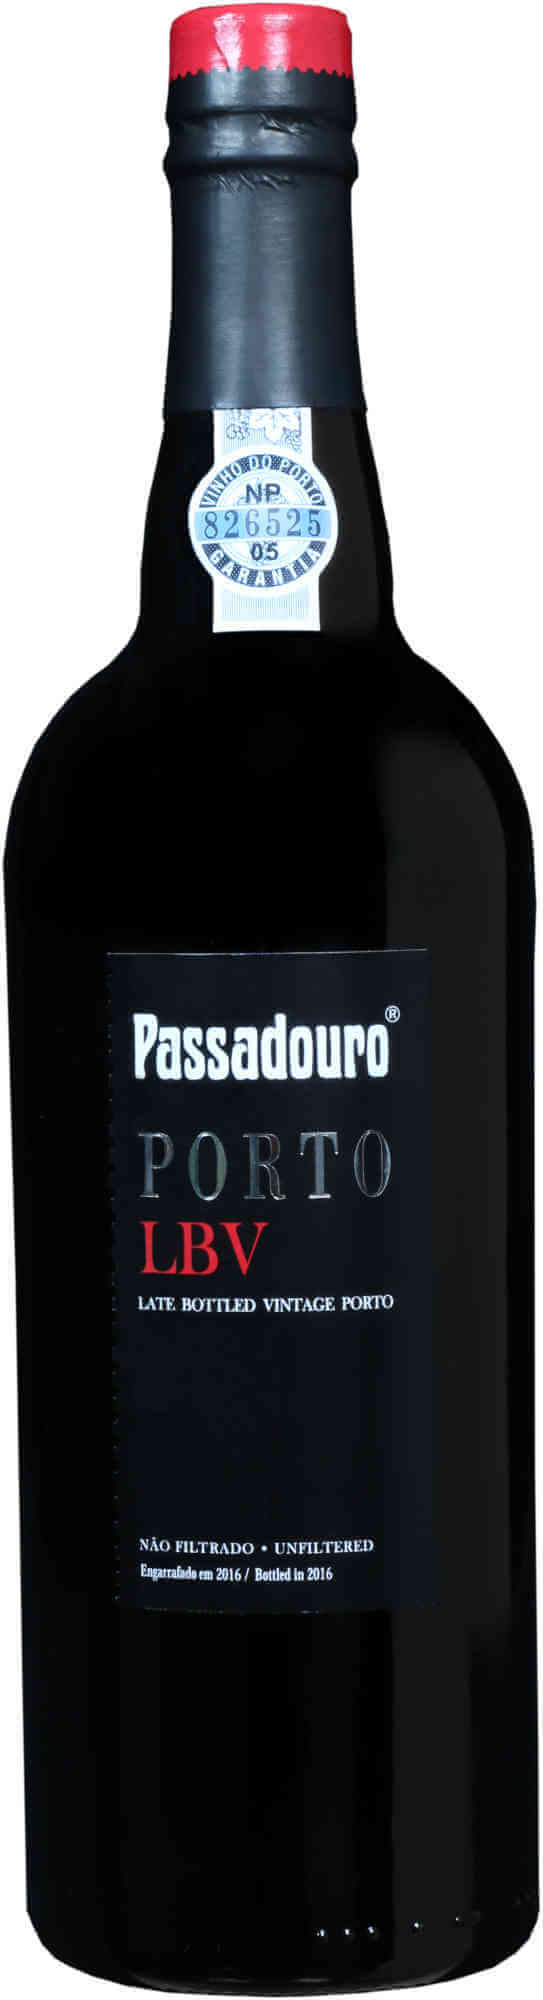 Passadouro-LBV-Port